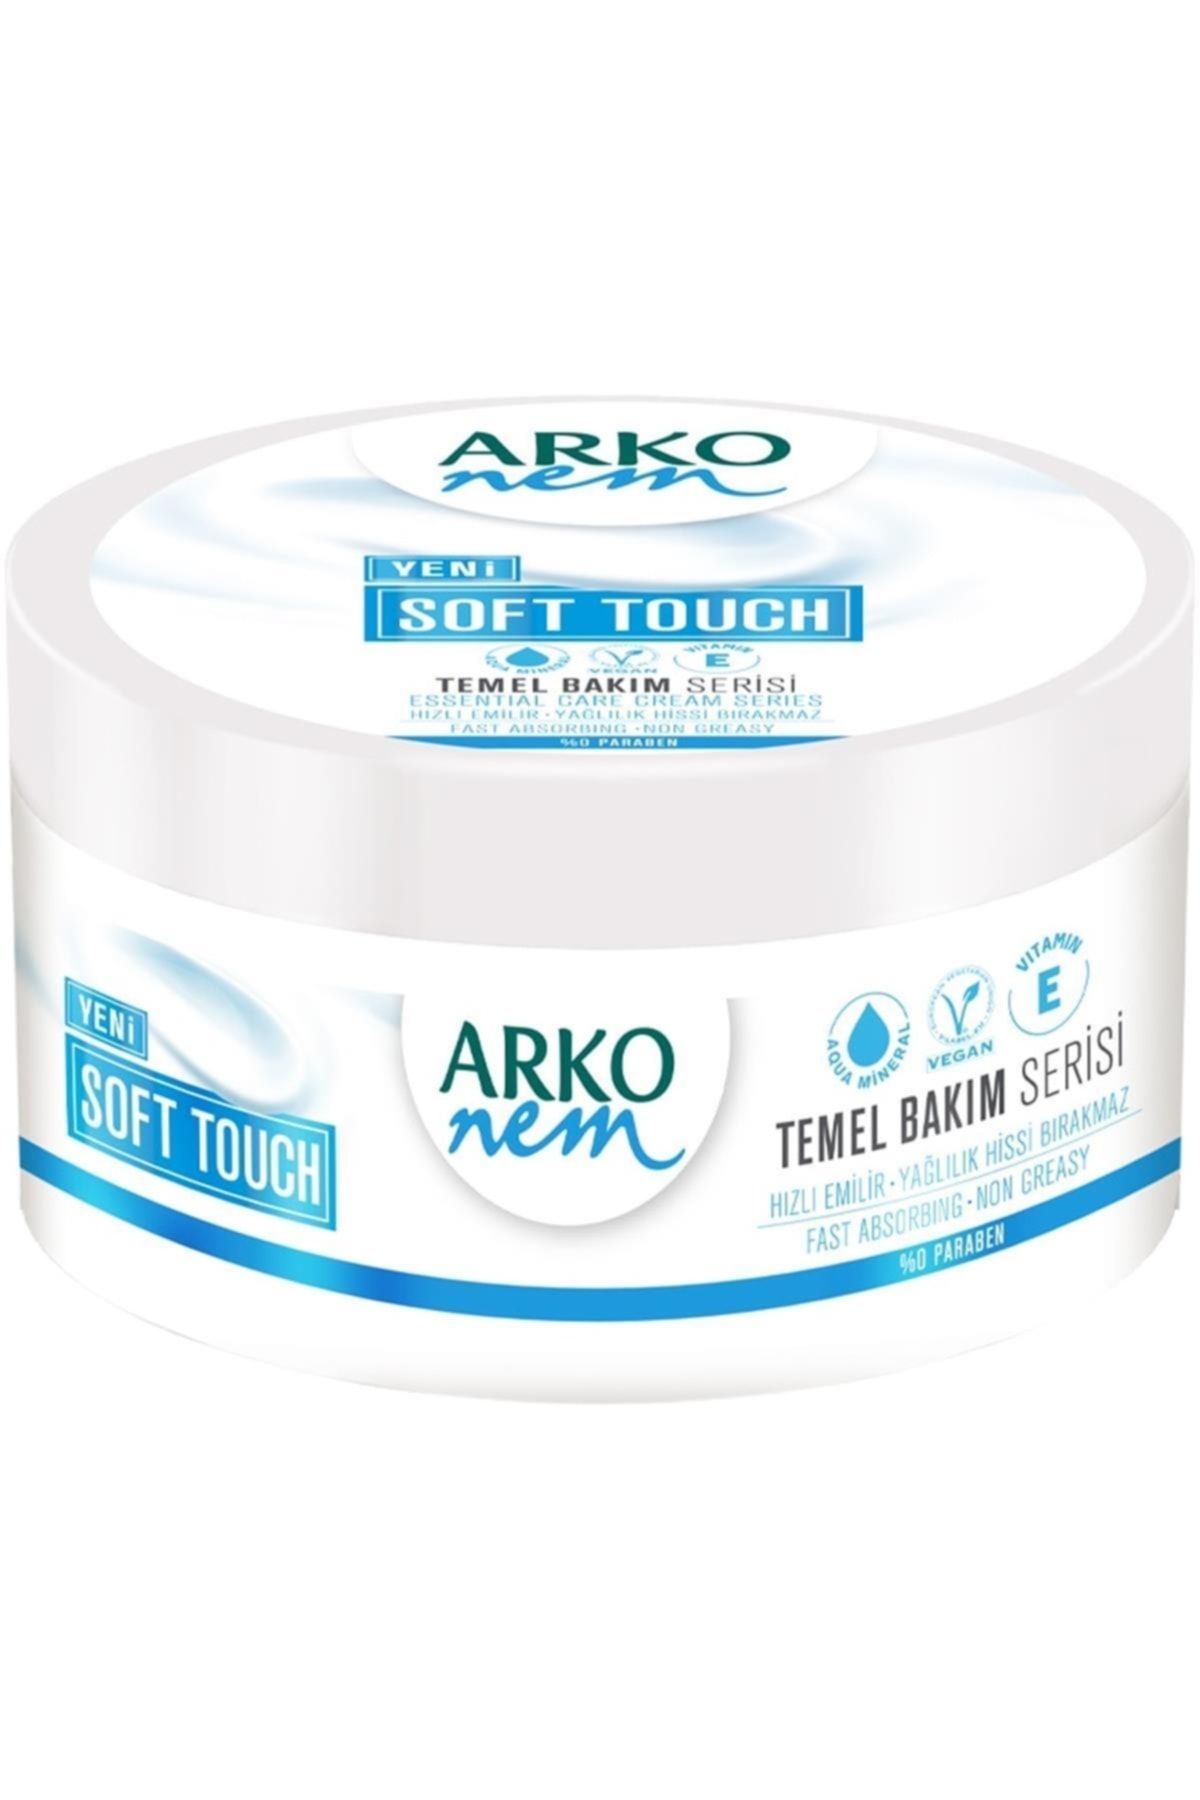 Arko Nem Temel Bakım Serisi Soft Touch Nemlendirici 250 ml (1 x 250 ml)